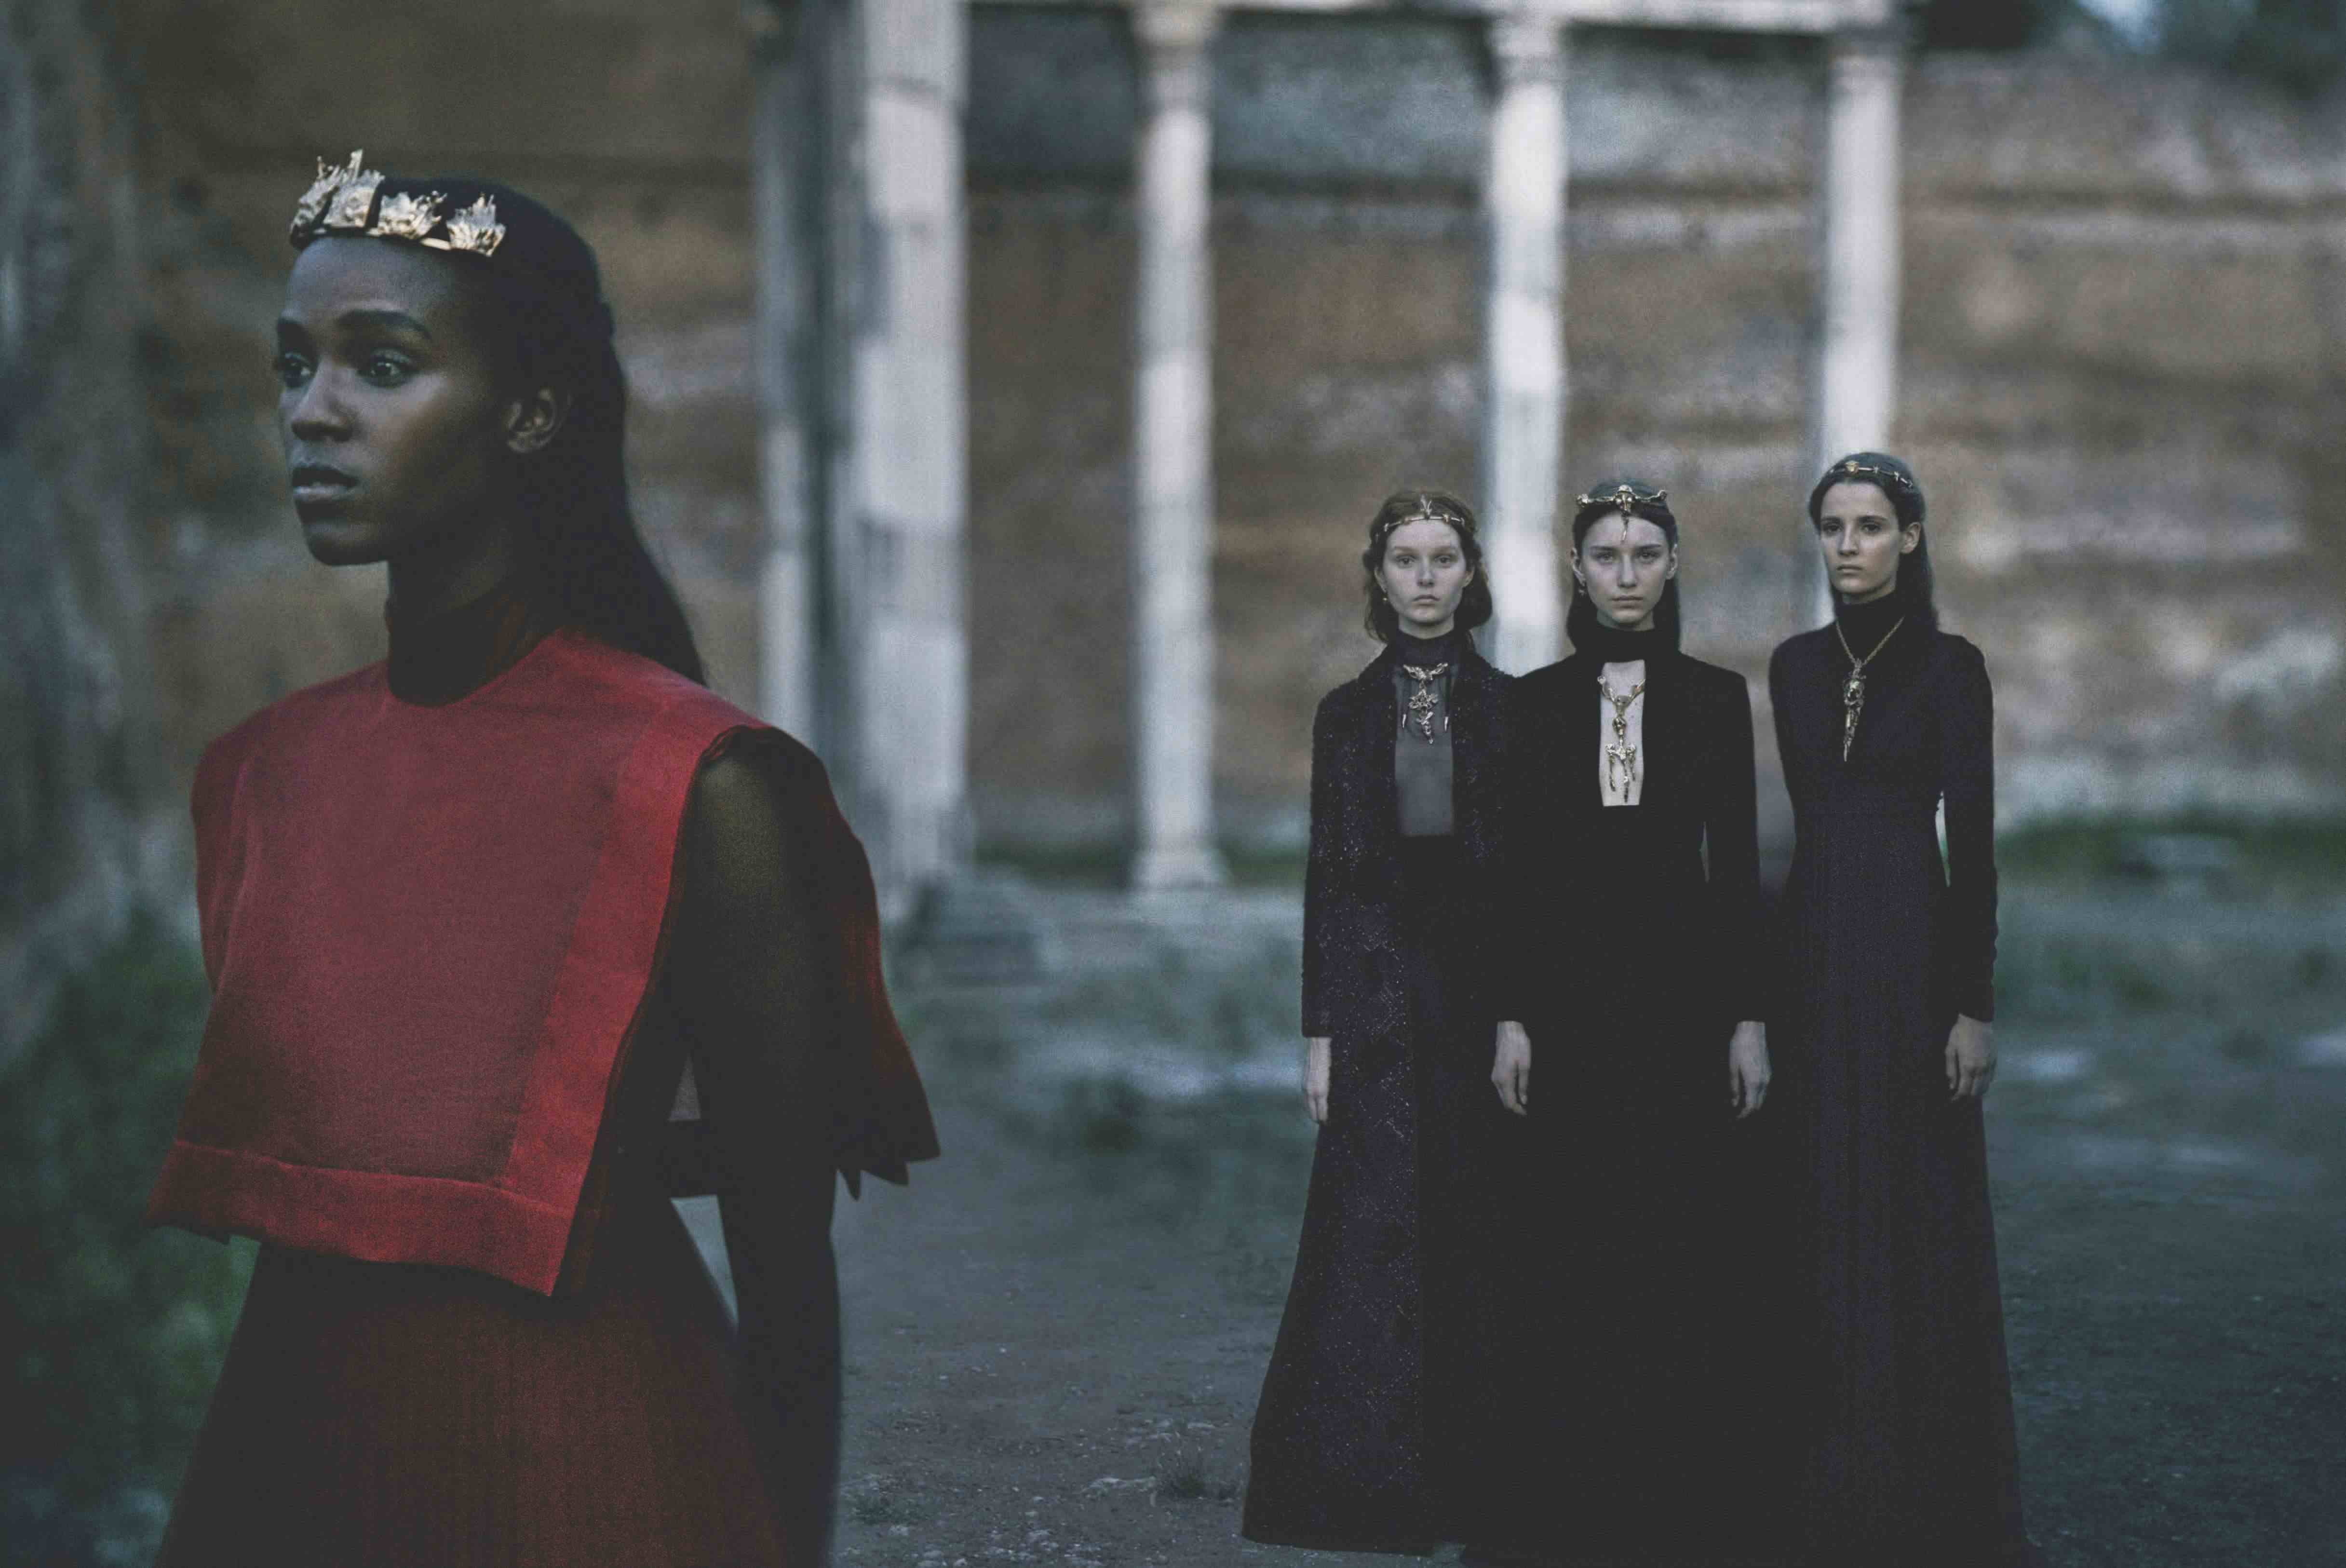 VOGUE ITALIA - Valentino: Haute Couture 2015
Photographer: Fabrizio Ferri
Stylist: Rober Rabenstainer
Location: Rome - Italy